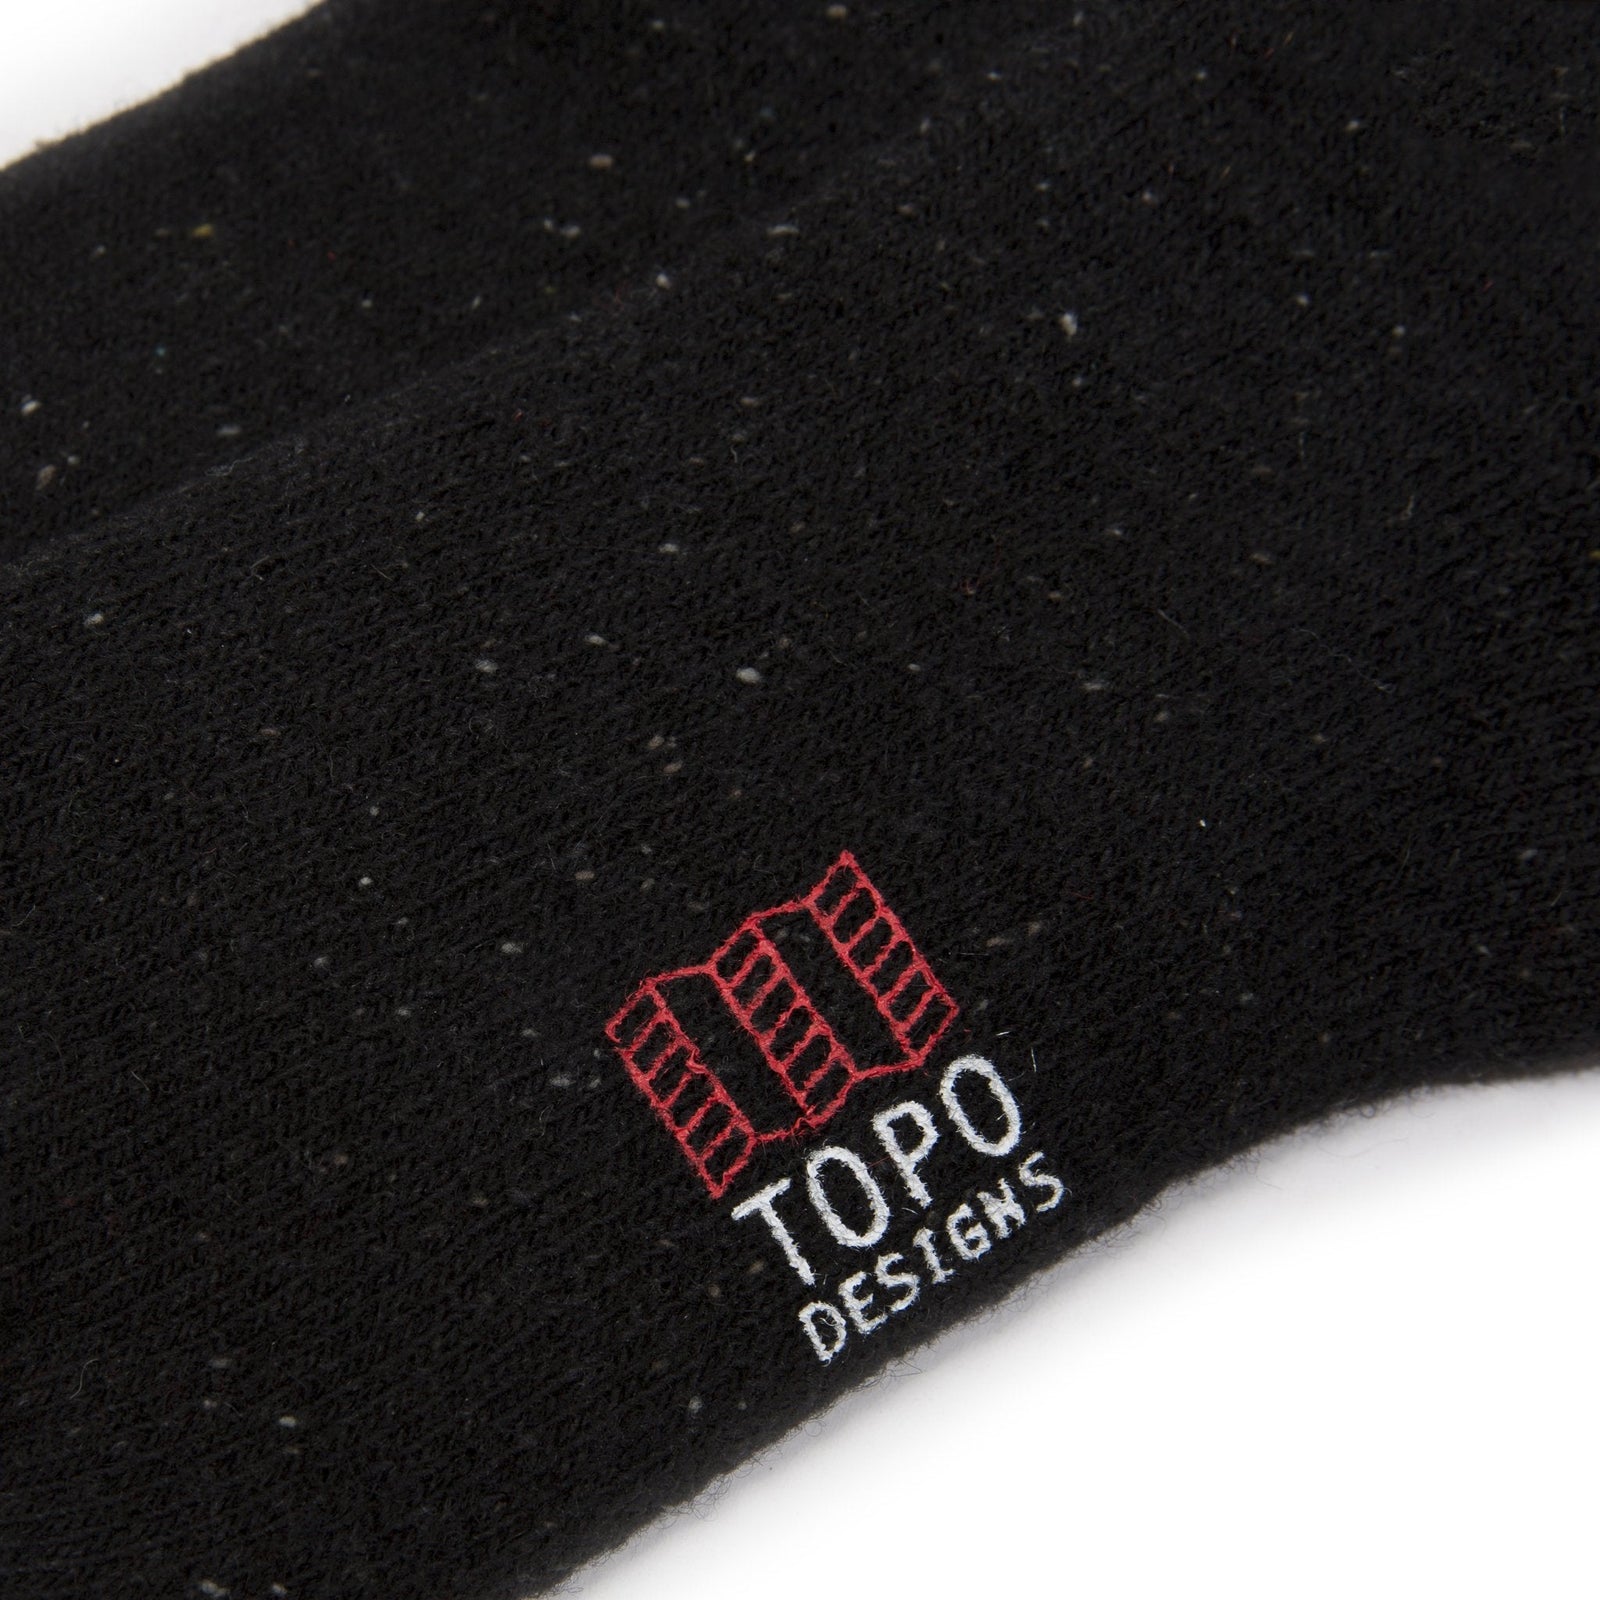 Detail shot of mountain socks in "black" showing logo.